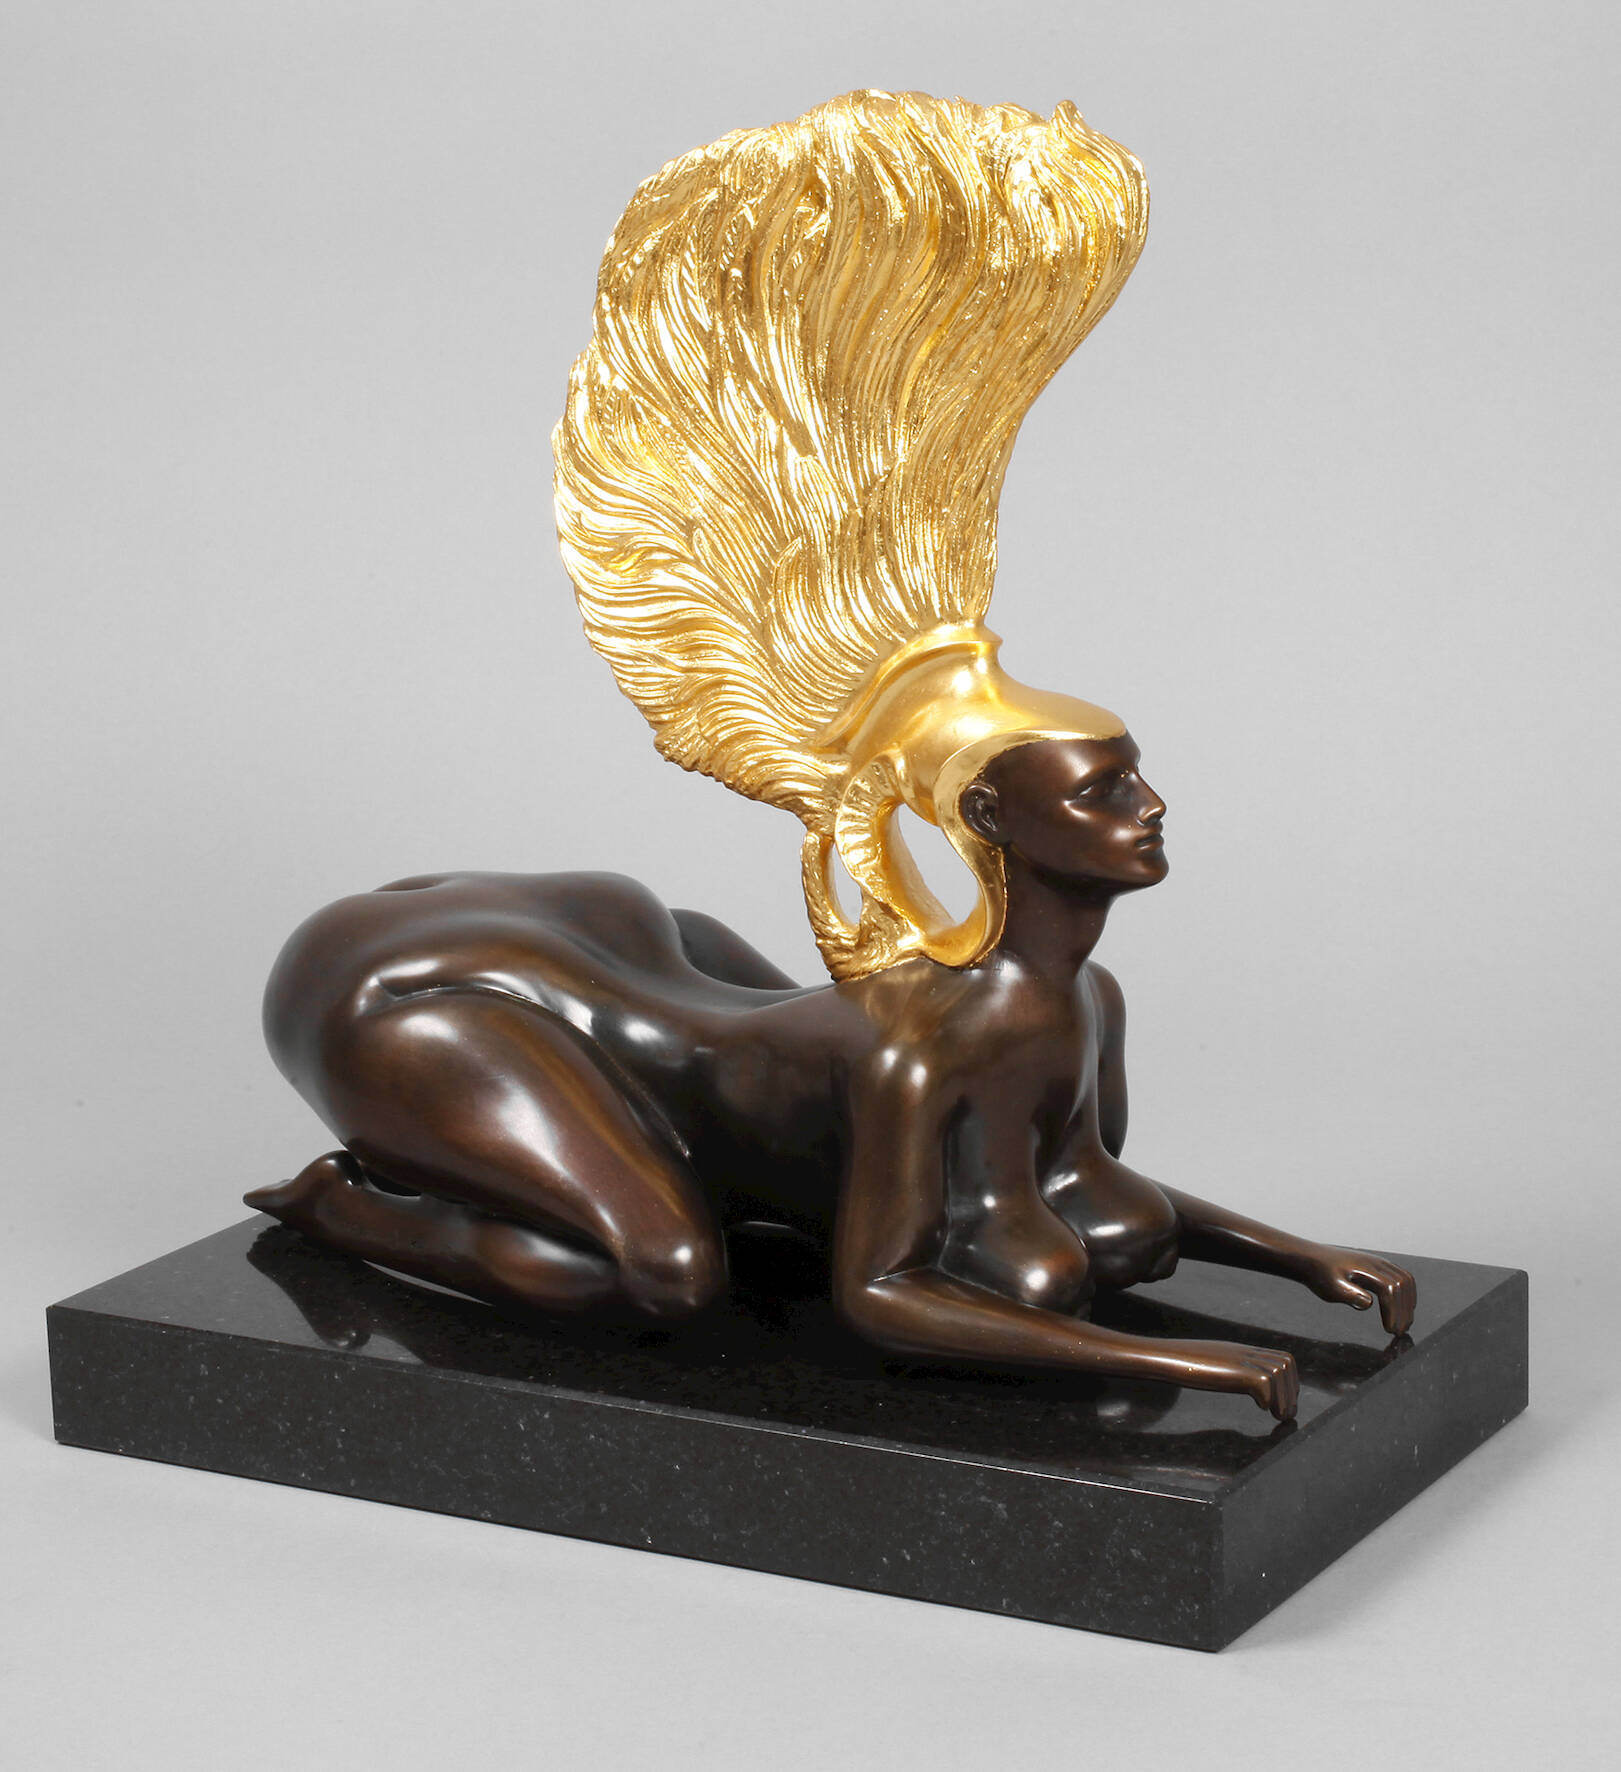 Ernst Fuchs, "Die Sphinx"